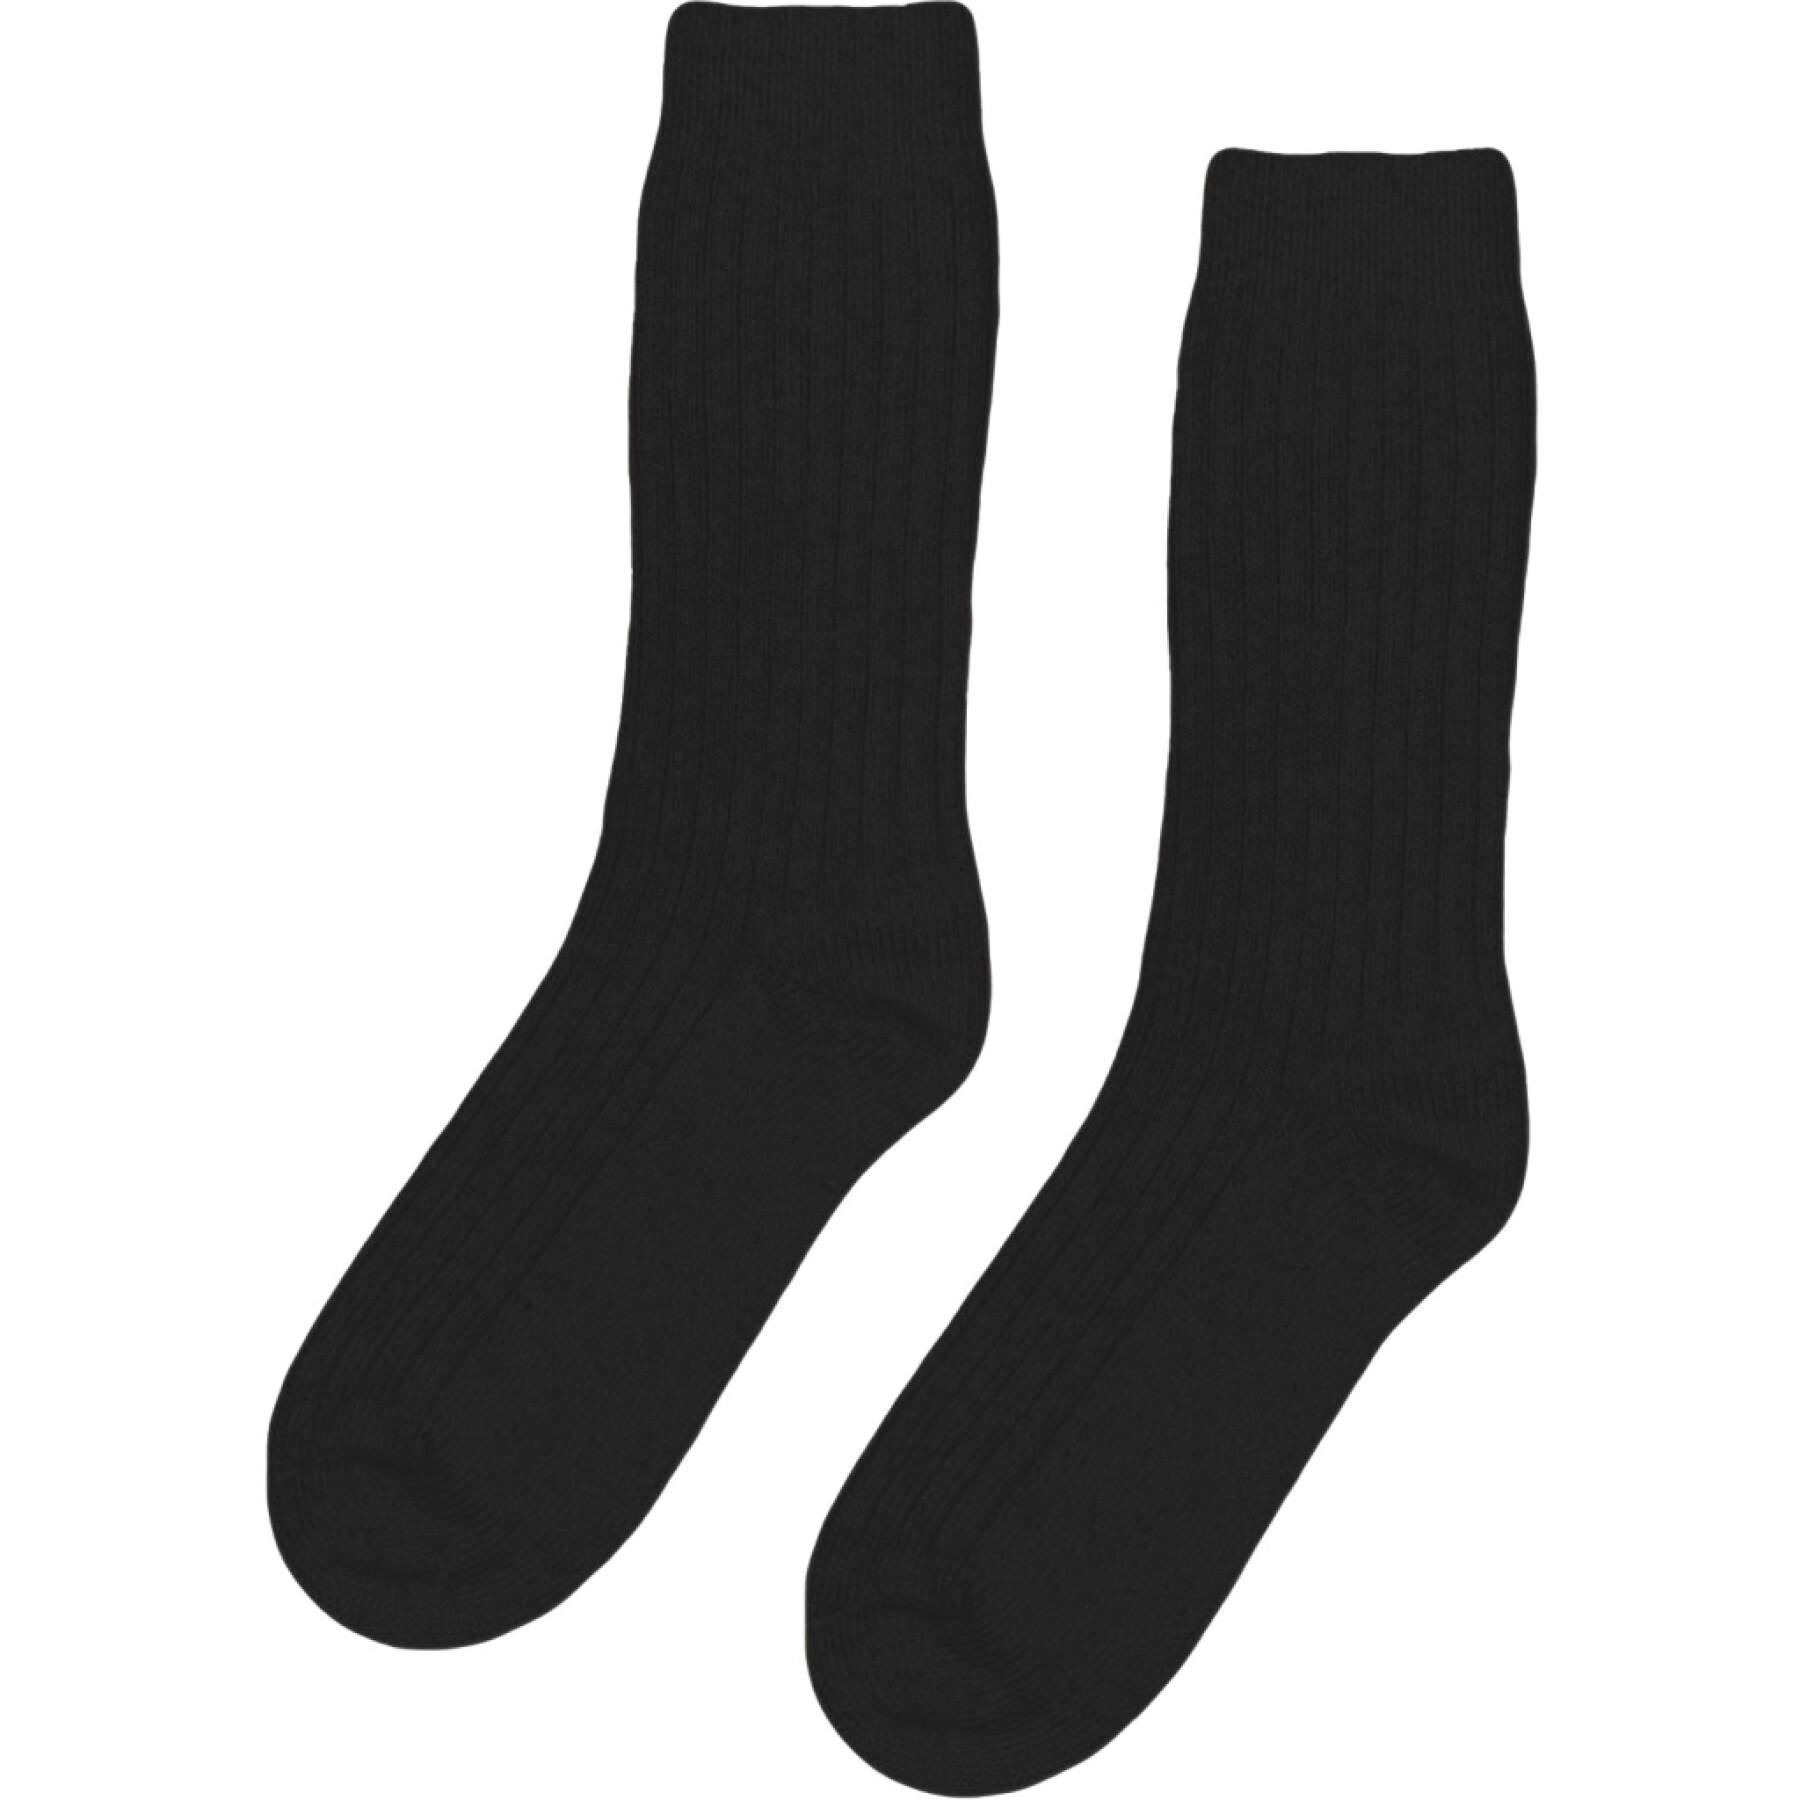 Wool socks Colorful Standard Merino Blend deep black